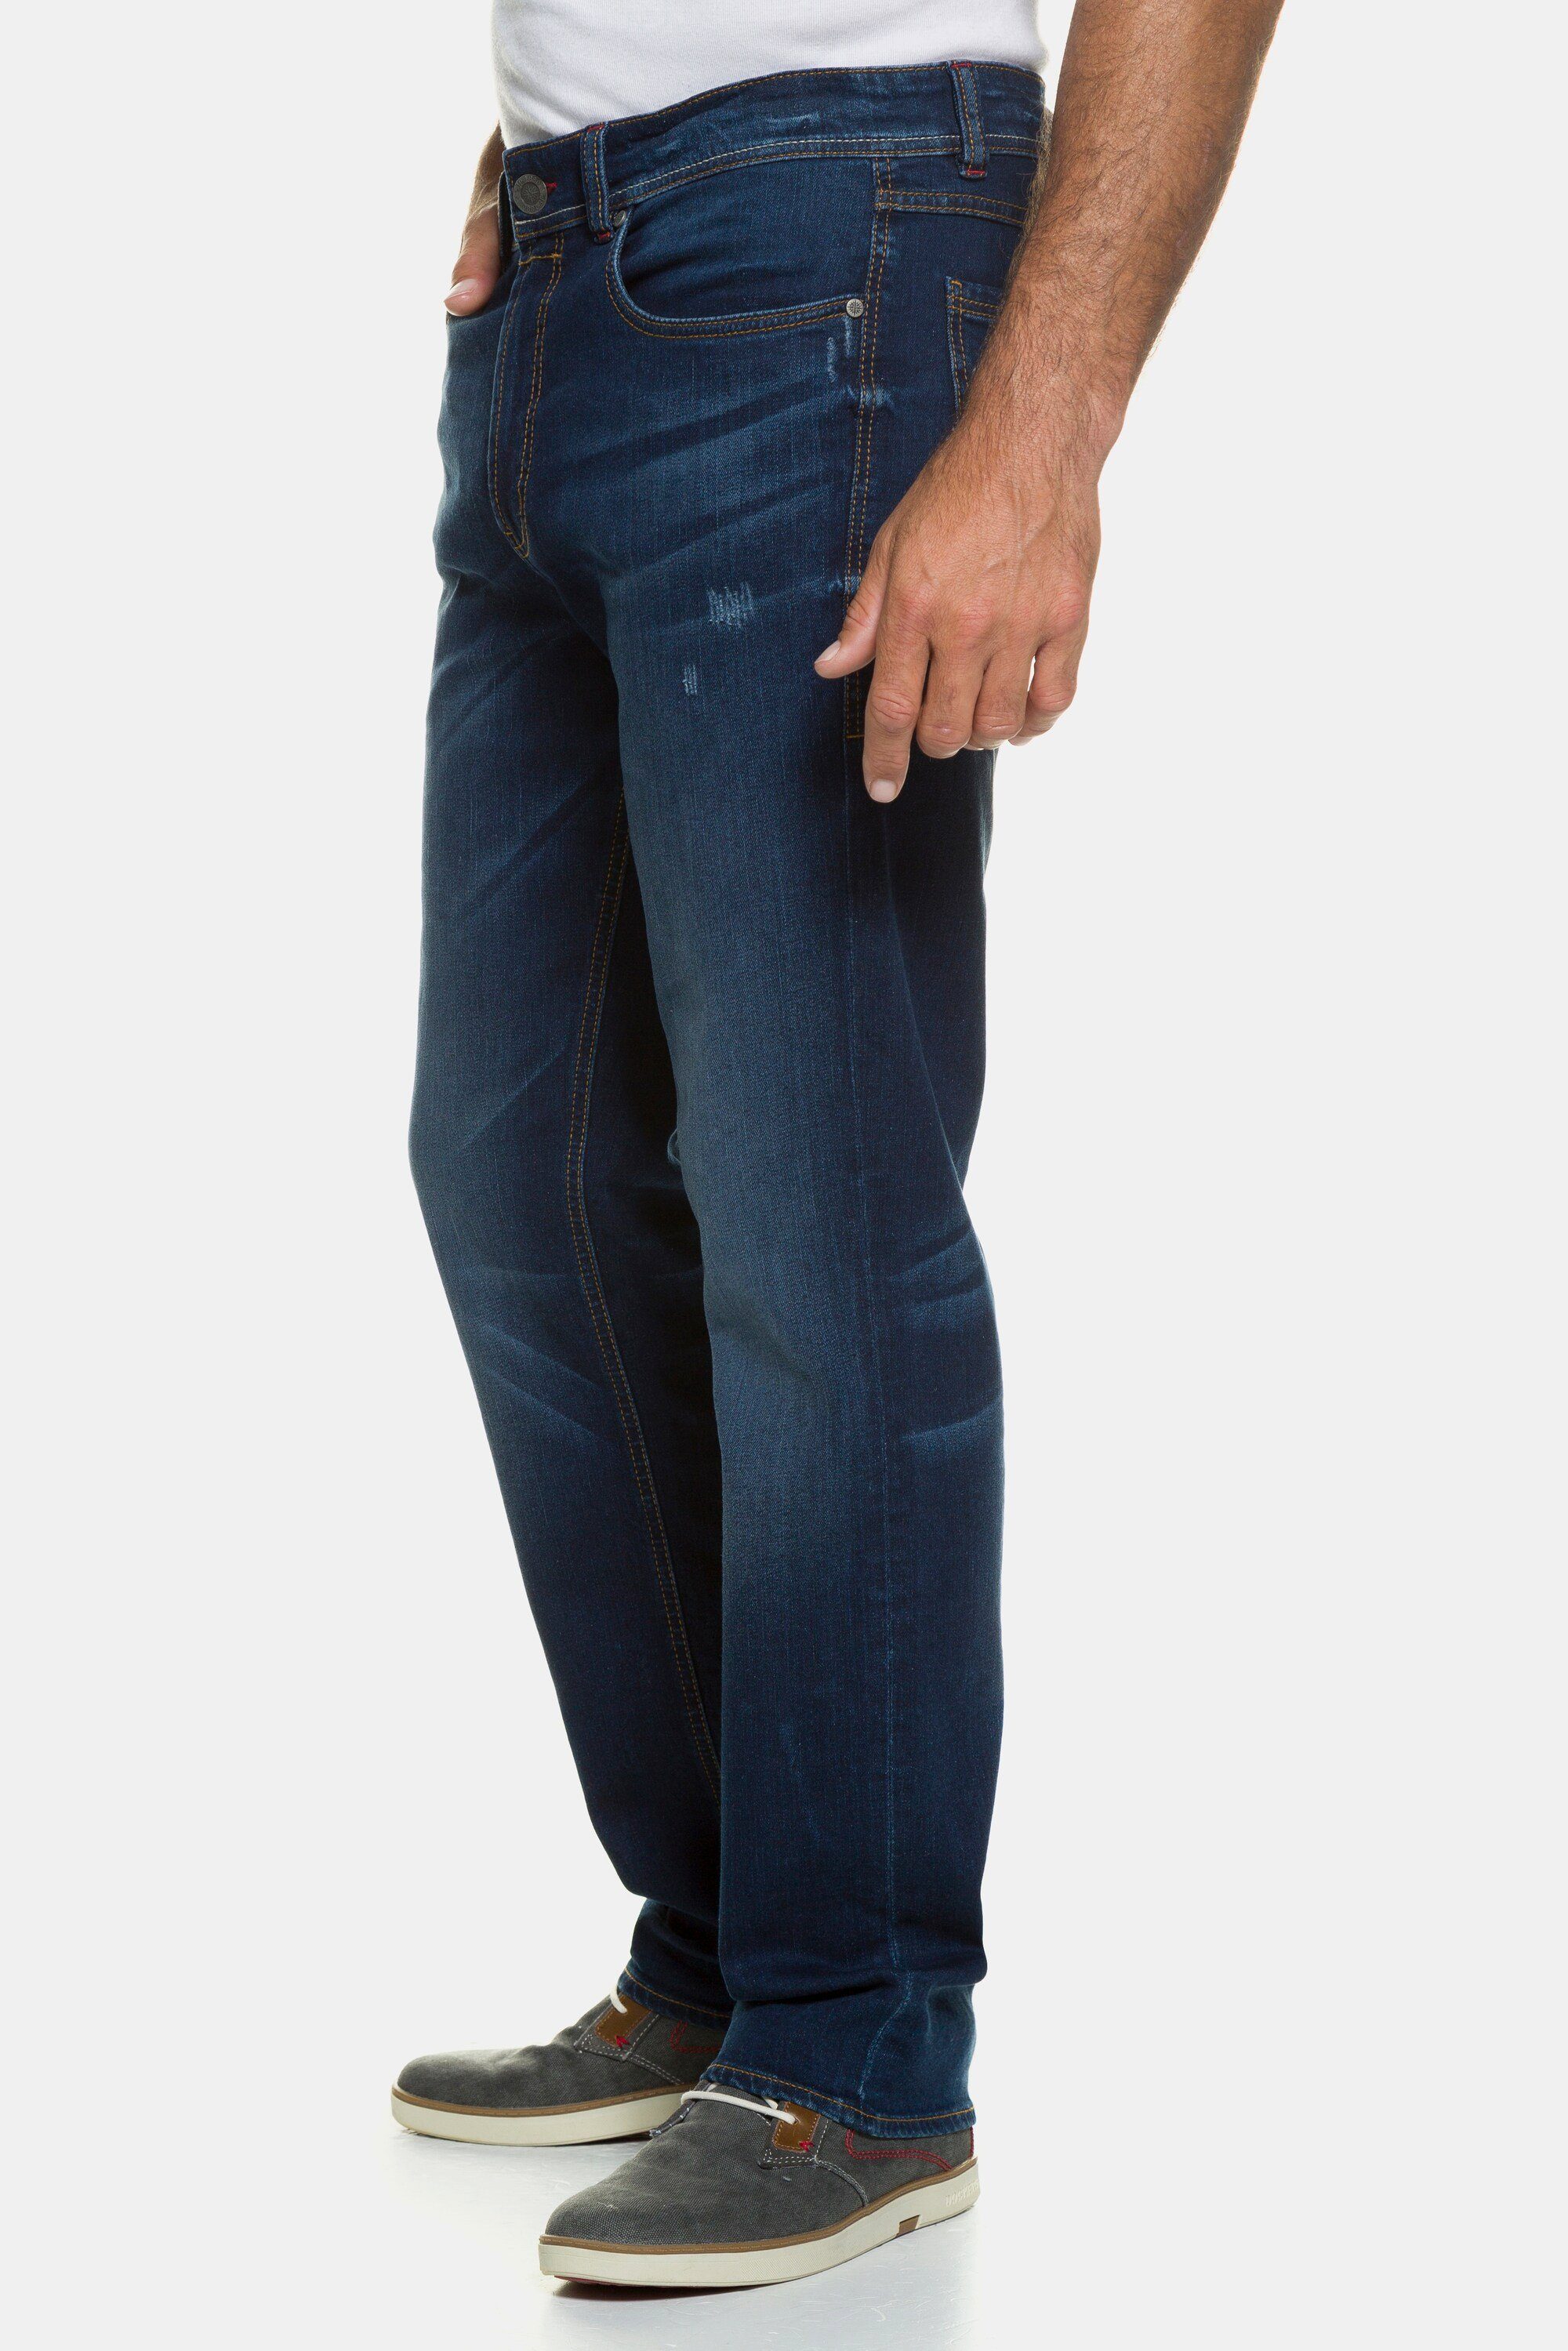 JP1880 5-Pocket-Jeans Jeans denim Gr. Denim blue 70/35 Straight Fit FLEXNAMIC® bis dark